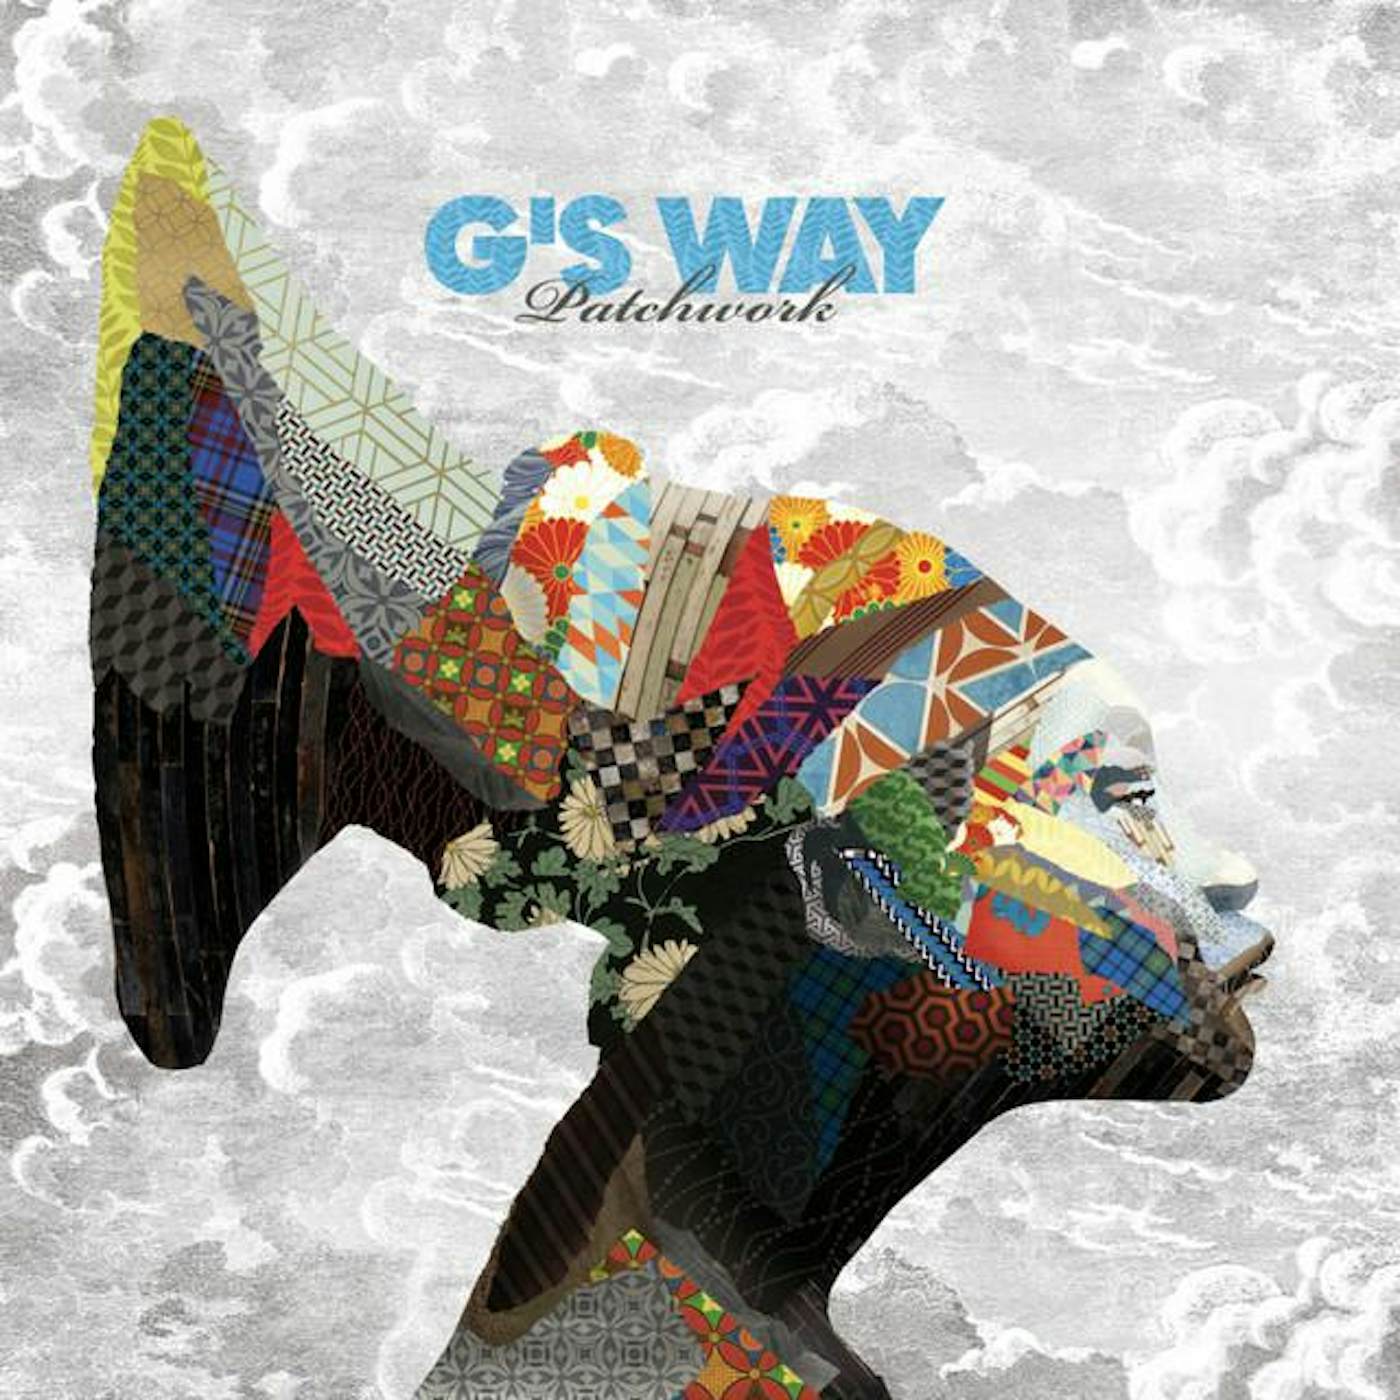 G's way